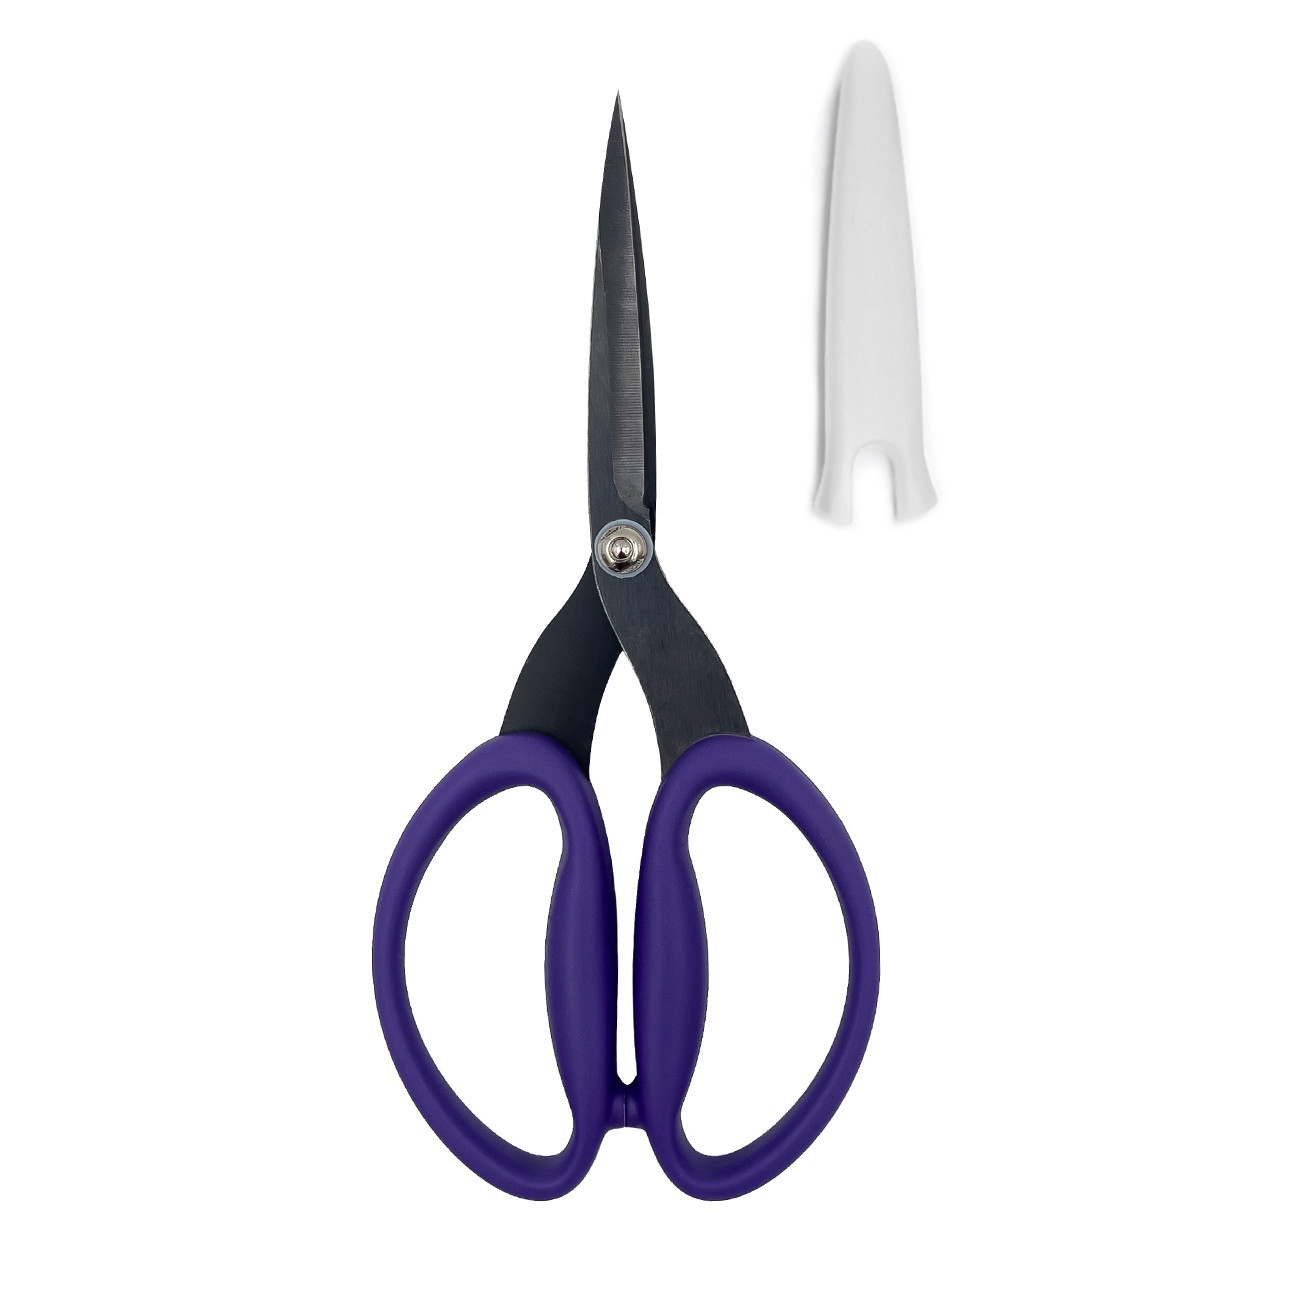 Best Scissors for Quilting - Karen Kay Buckley Perfect Scissors 